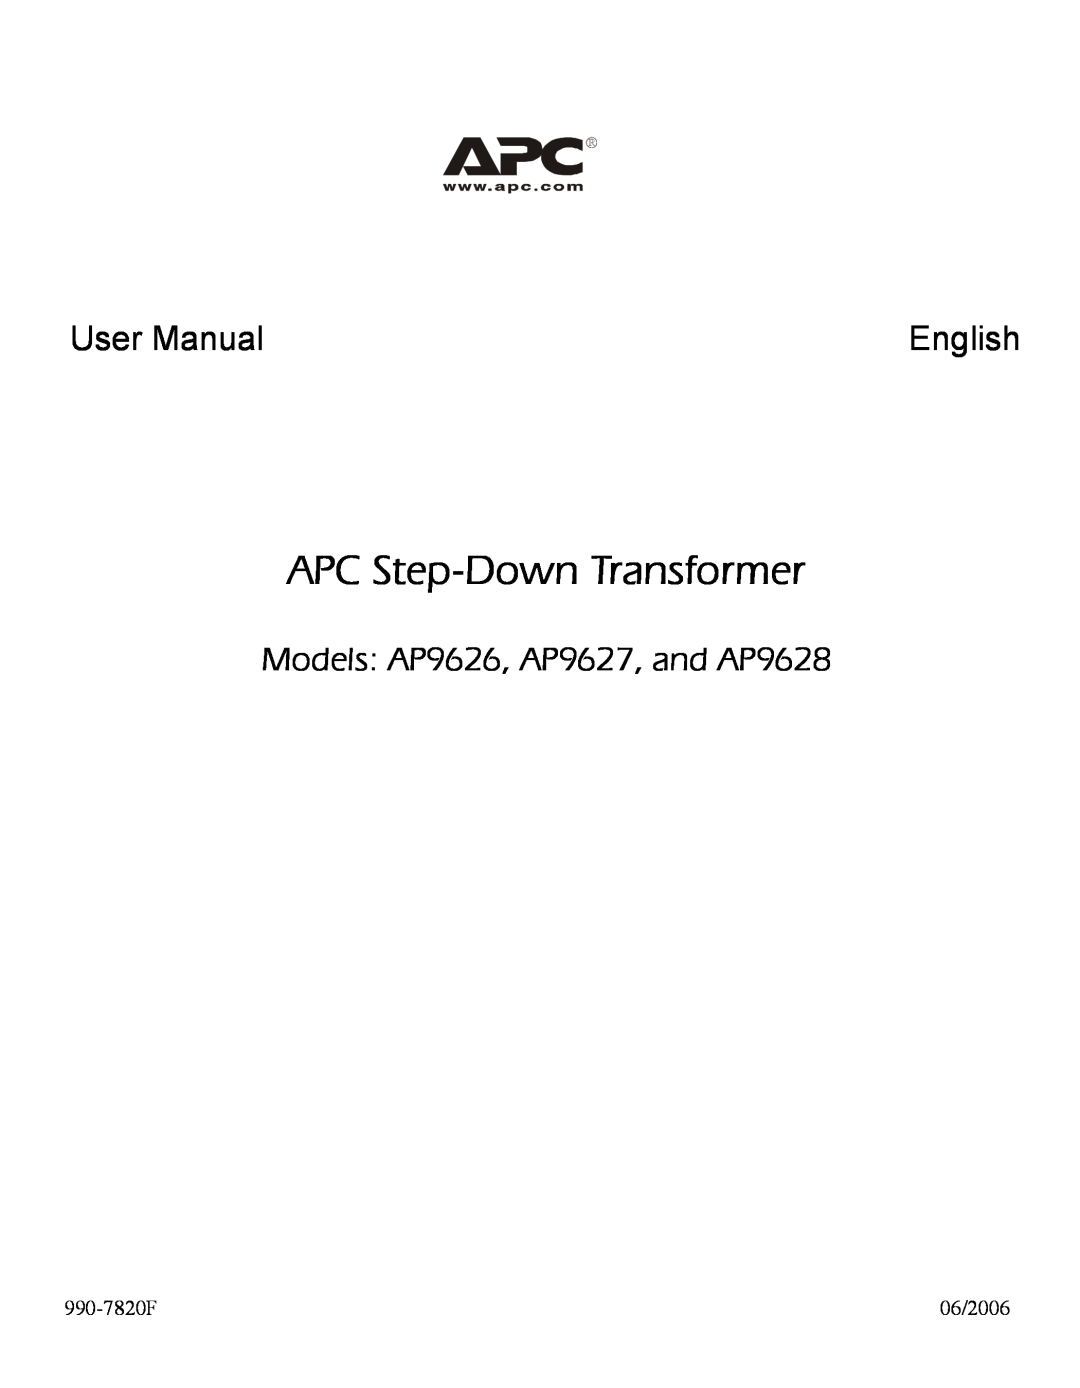 APC user manual APC Step-Down Transformer, User Manual, English, Models AP9626, AP9627, and AP9628 